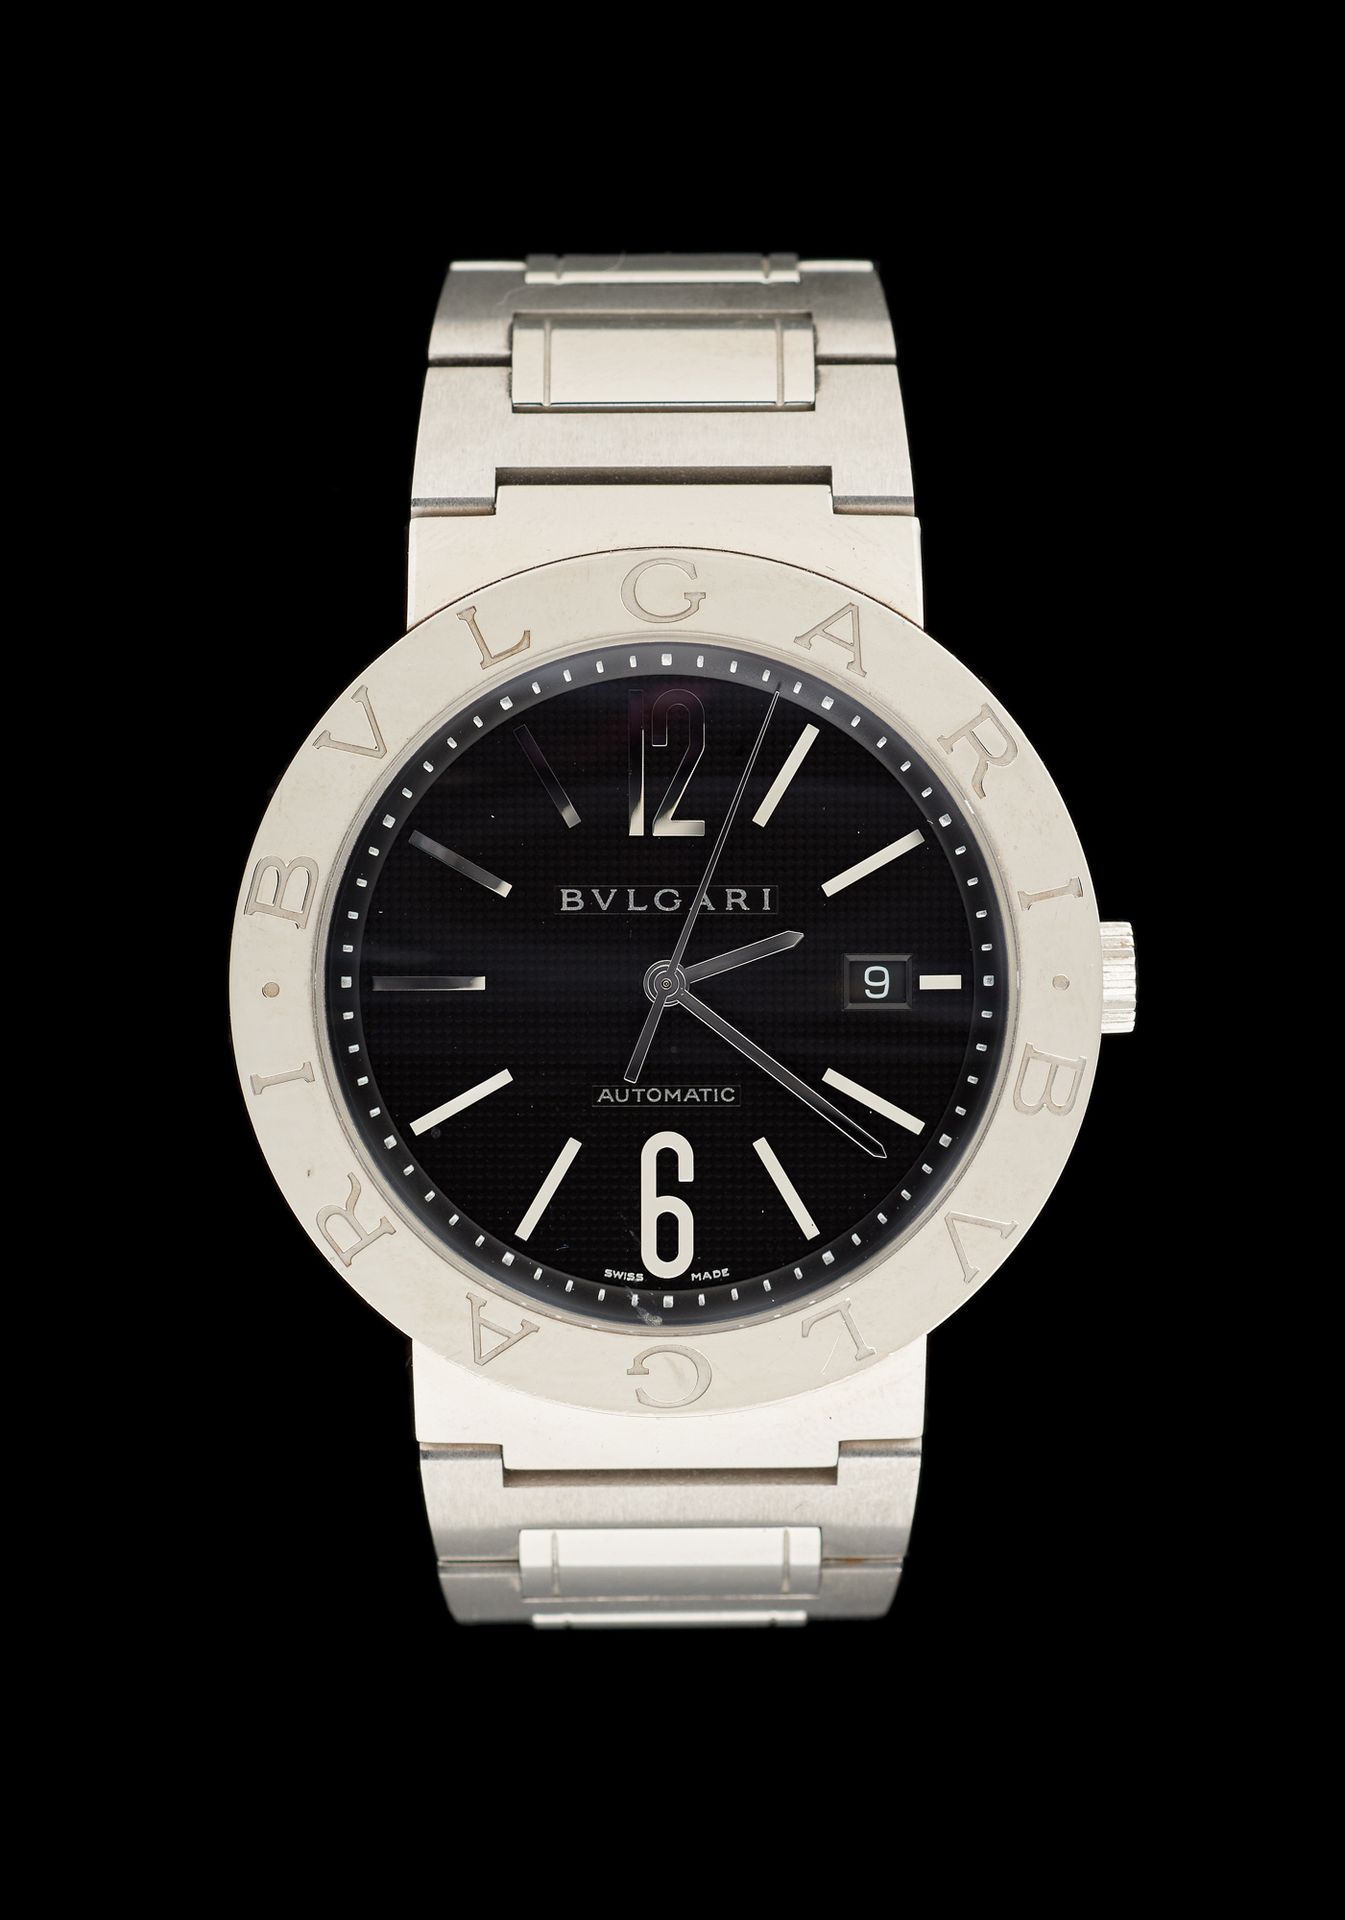 Bulgari. Uhren: Armbanduhr aus Stahl, Automatikwerk mit Datumsfenster.

Von der &hellip;